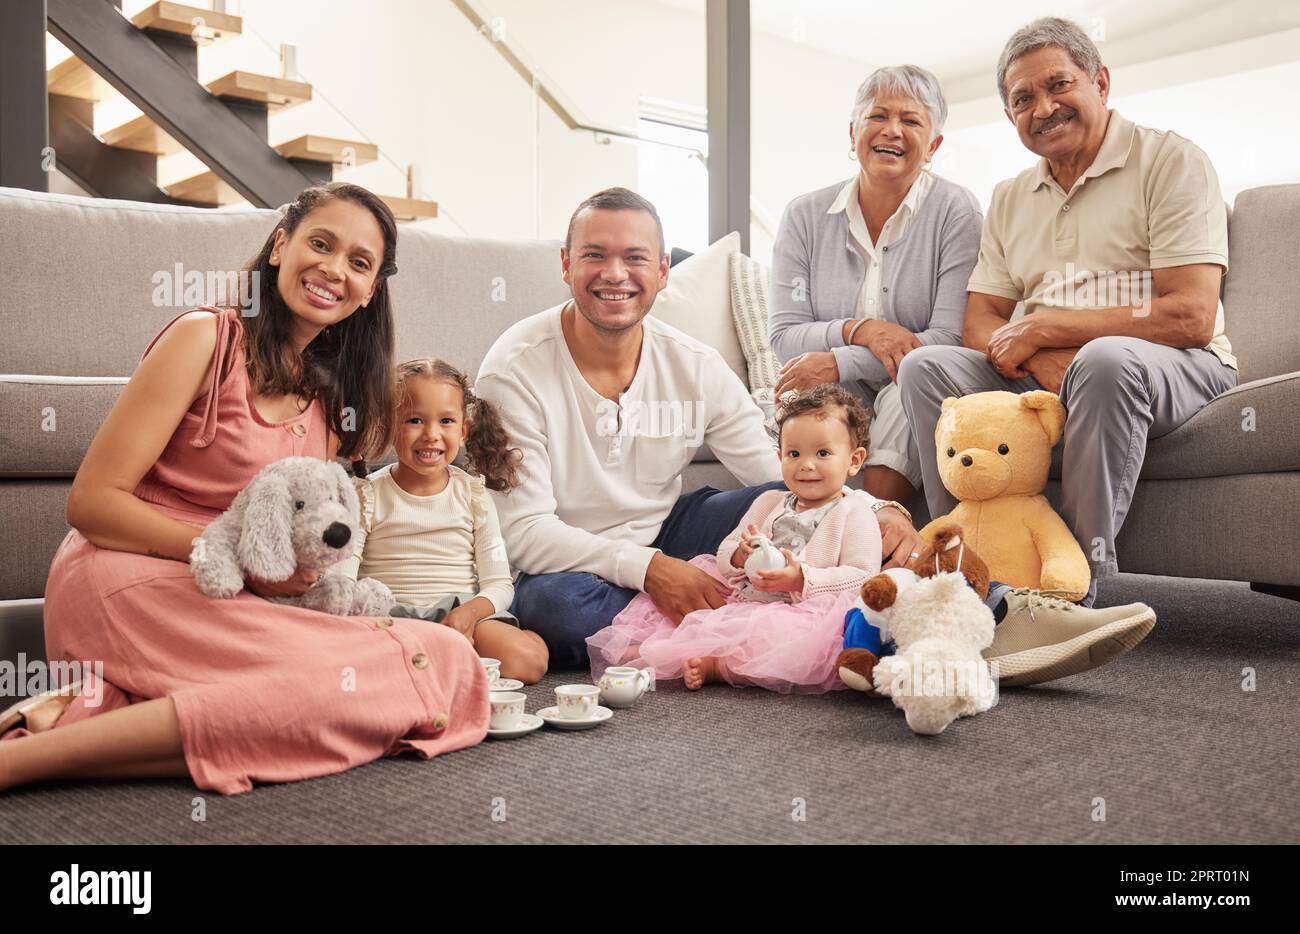 Porträt einer glücklichen Familie, die zusammen eine Teeparty im Wohnzimmer veranstaltet, lächelt und sich auf dem Boden entspannt. Fröhliche Großeltern genießen das Wochenende mit ihrem Enkel, sind verspielt und haben Spaß Stockfoto